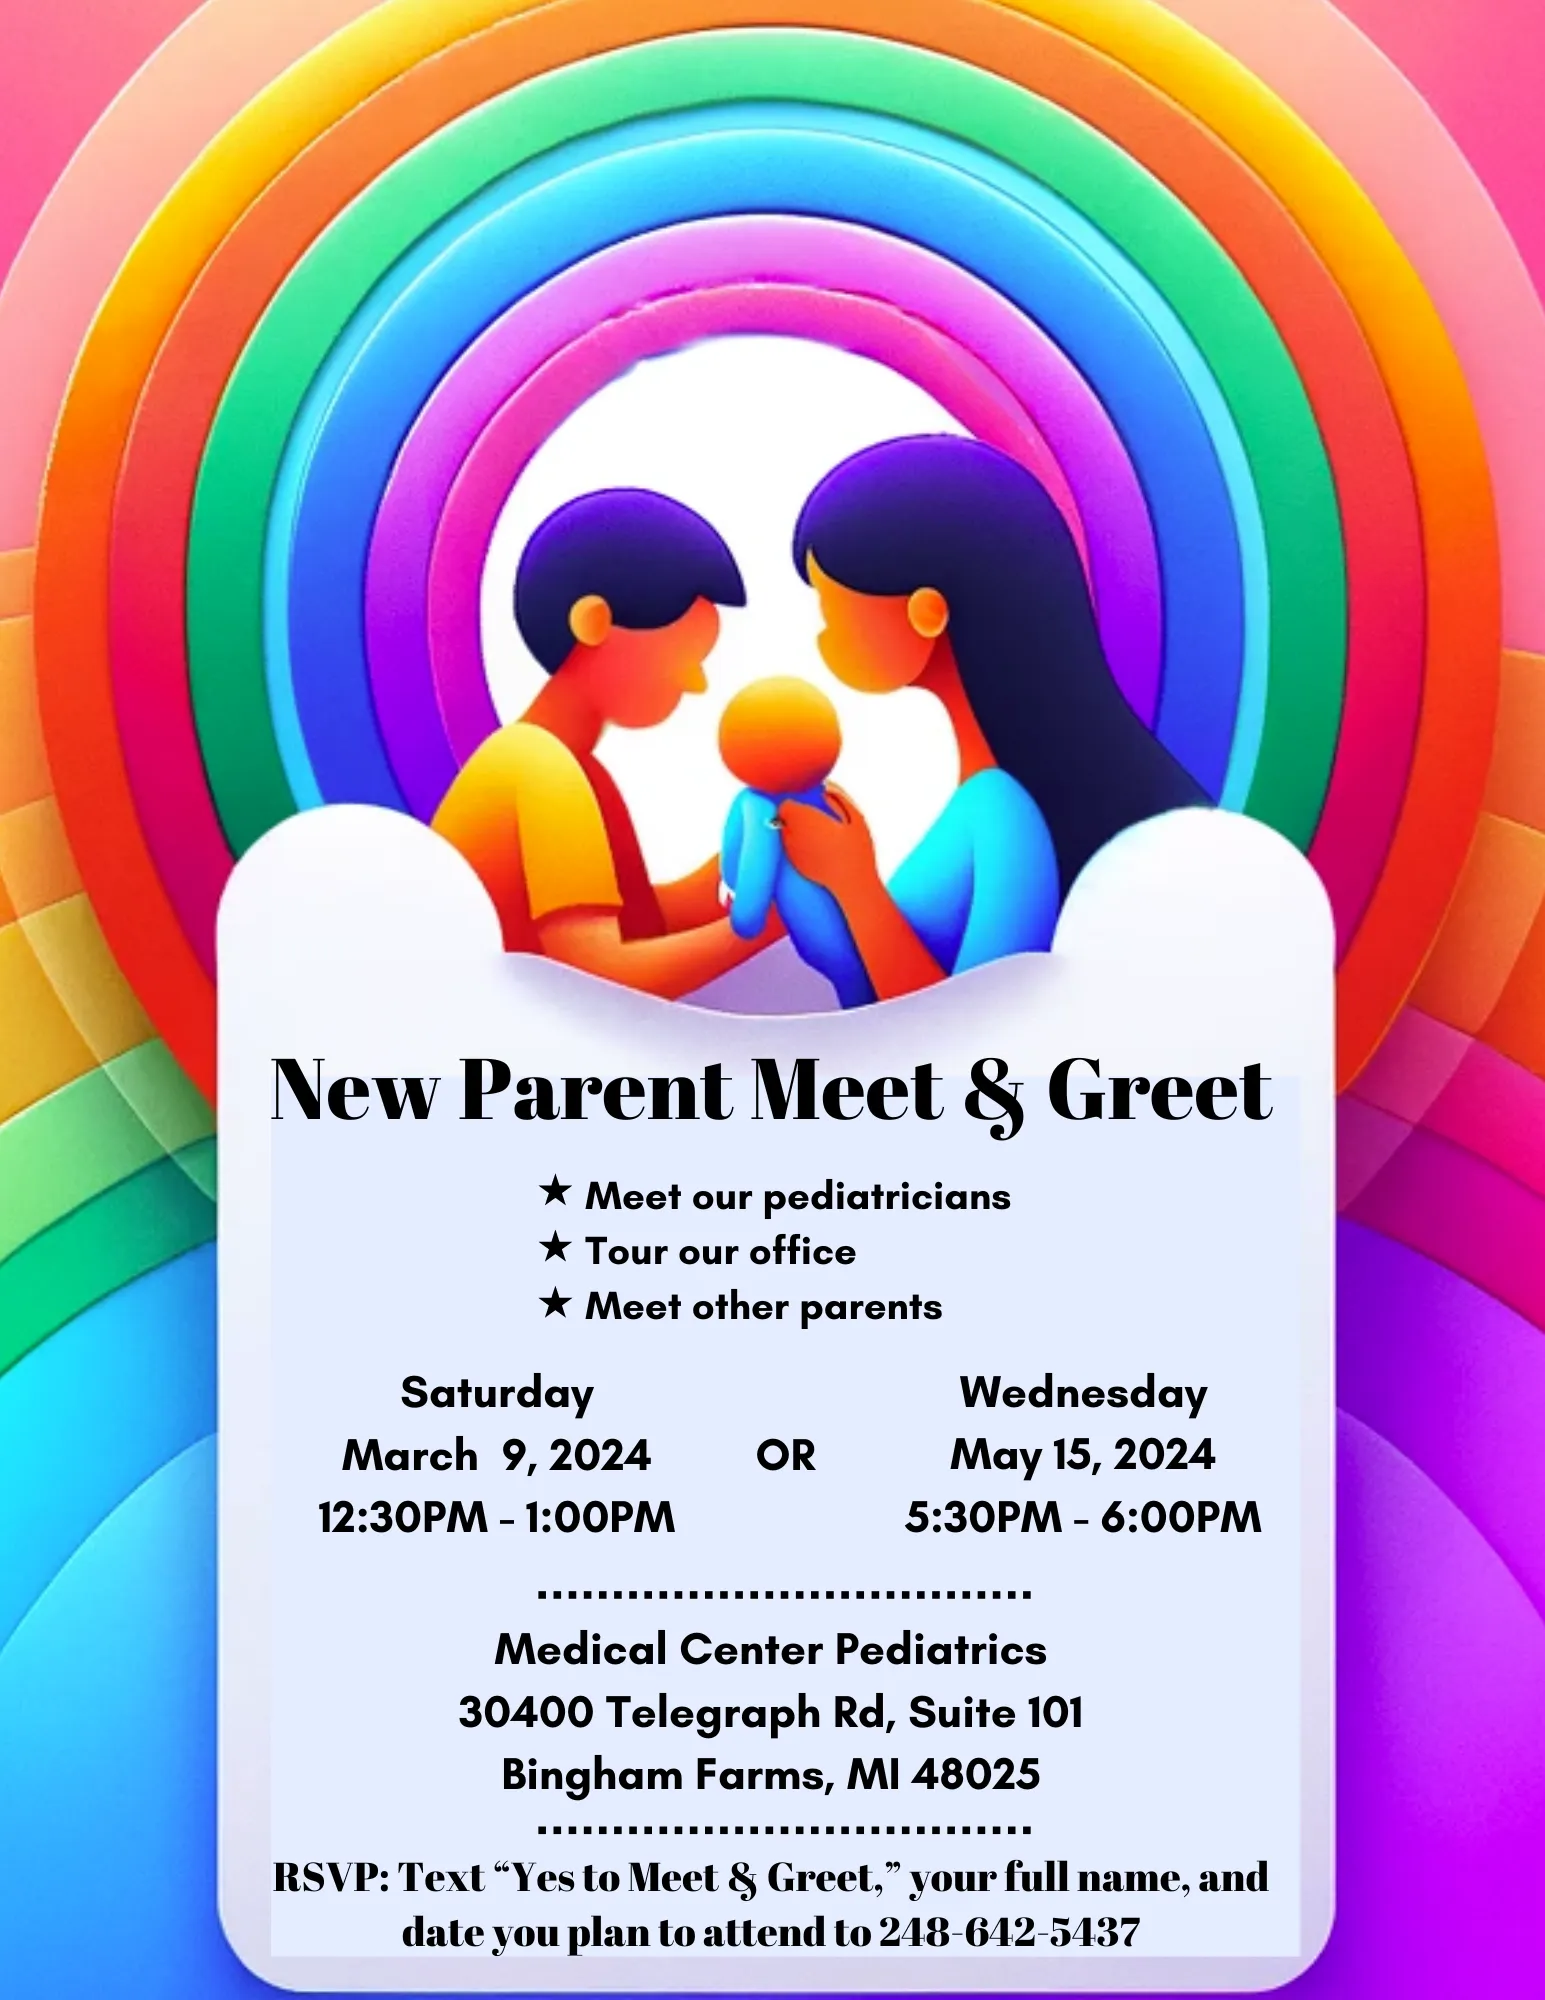 New Parent Meet & Greet